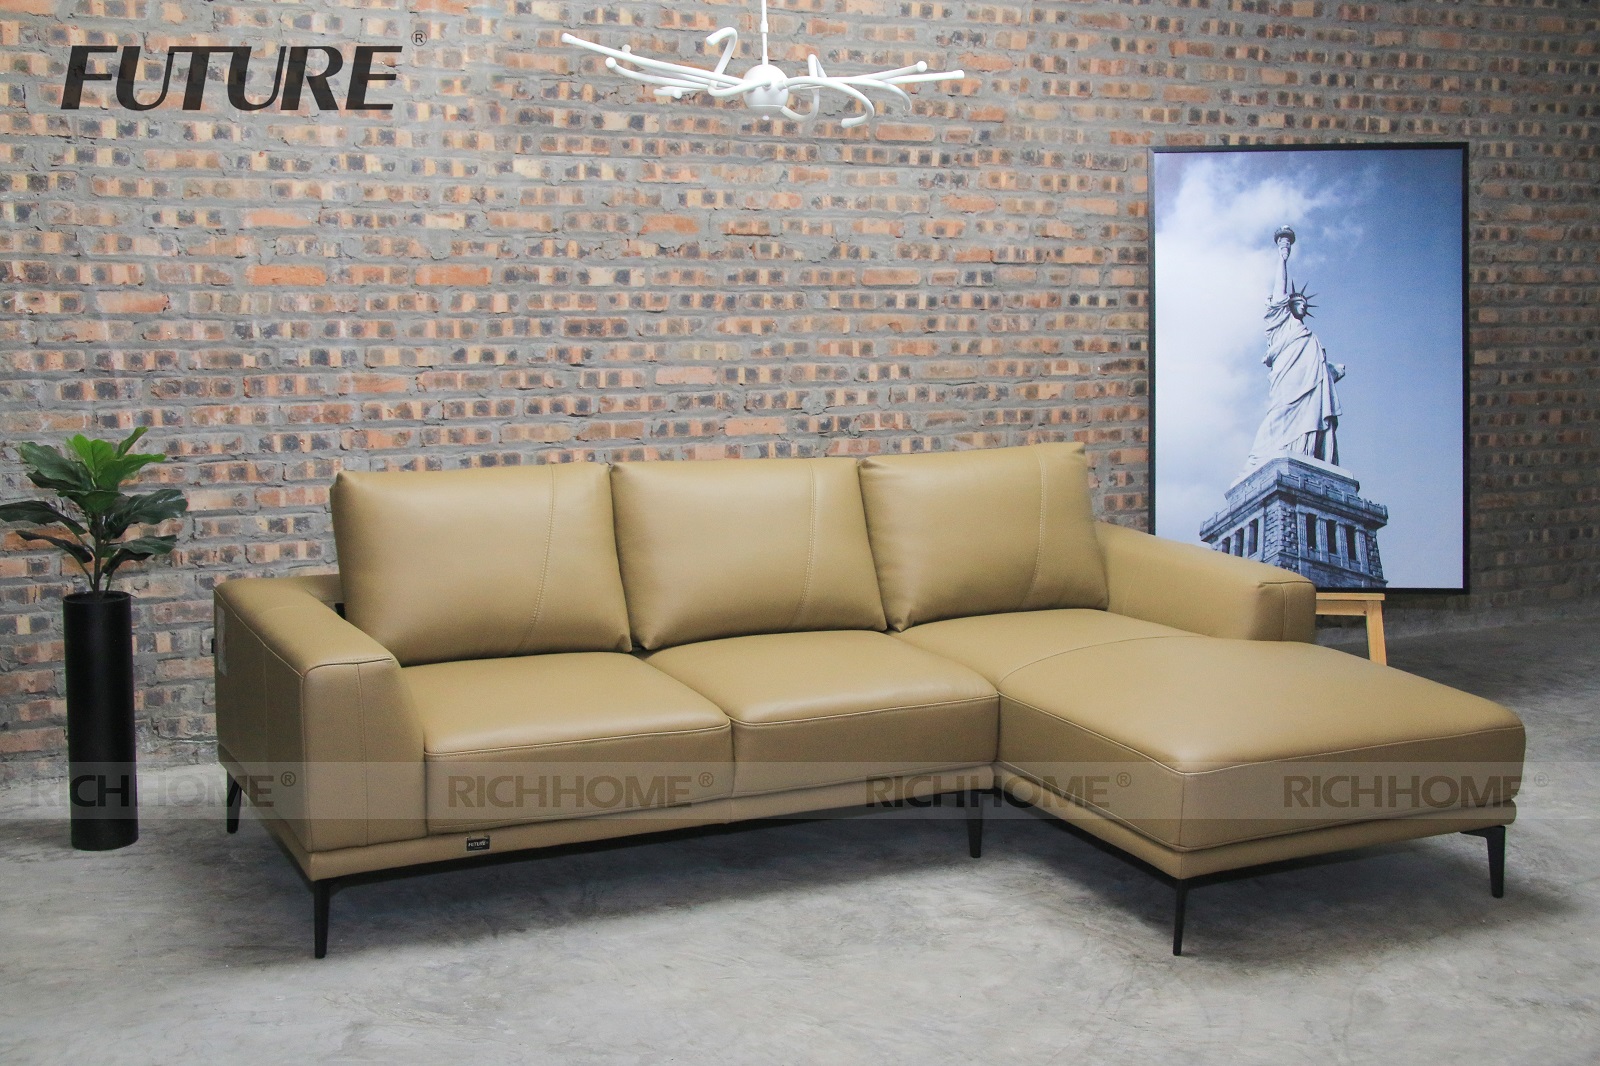 Địa chỉ mua ghế sofa nhập khẩu giá rẻ tại Hà Nội - Ảnh 2